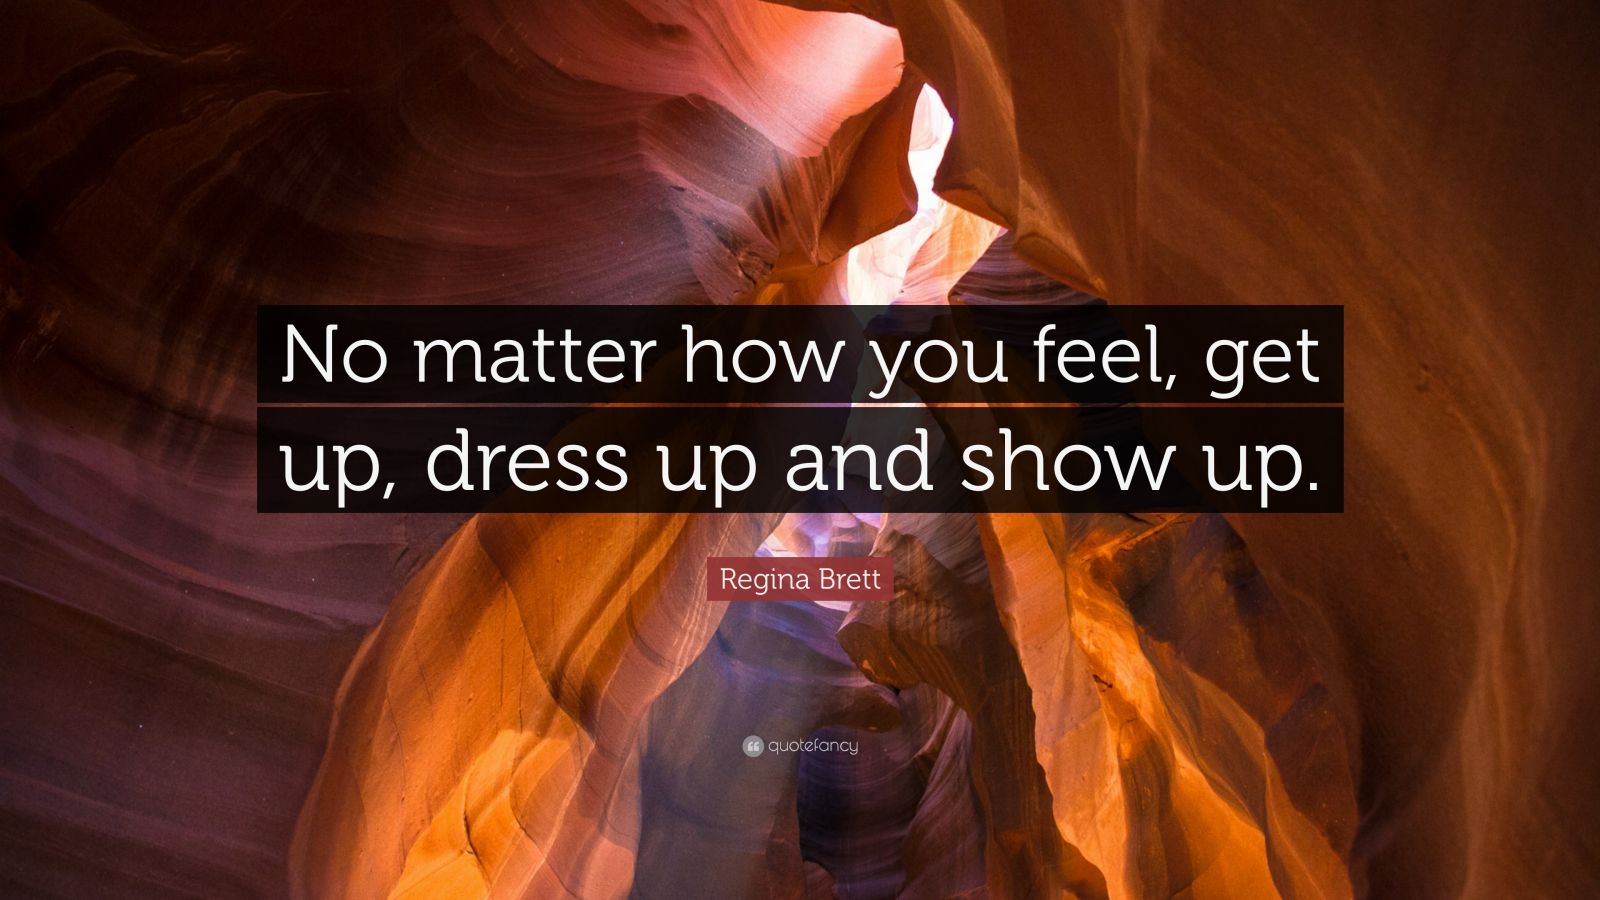 Regina Brett Quote “No matter how you feel, get up, dress